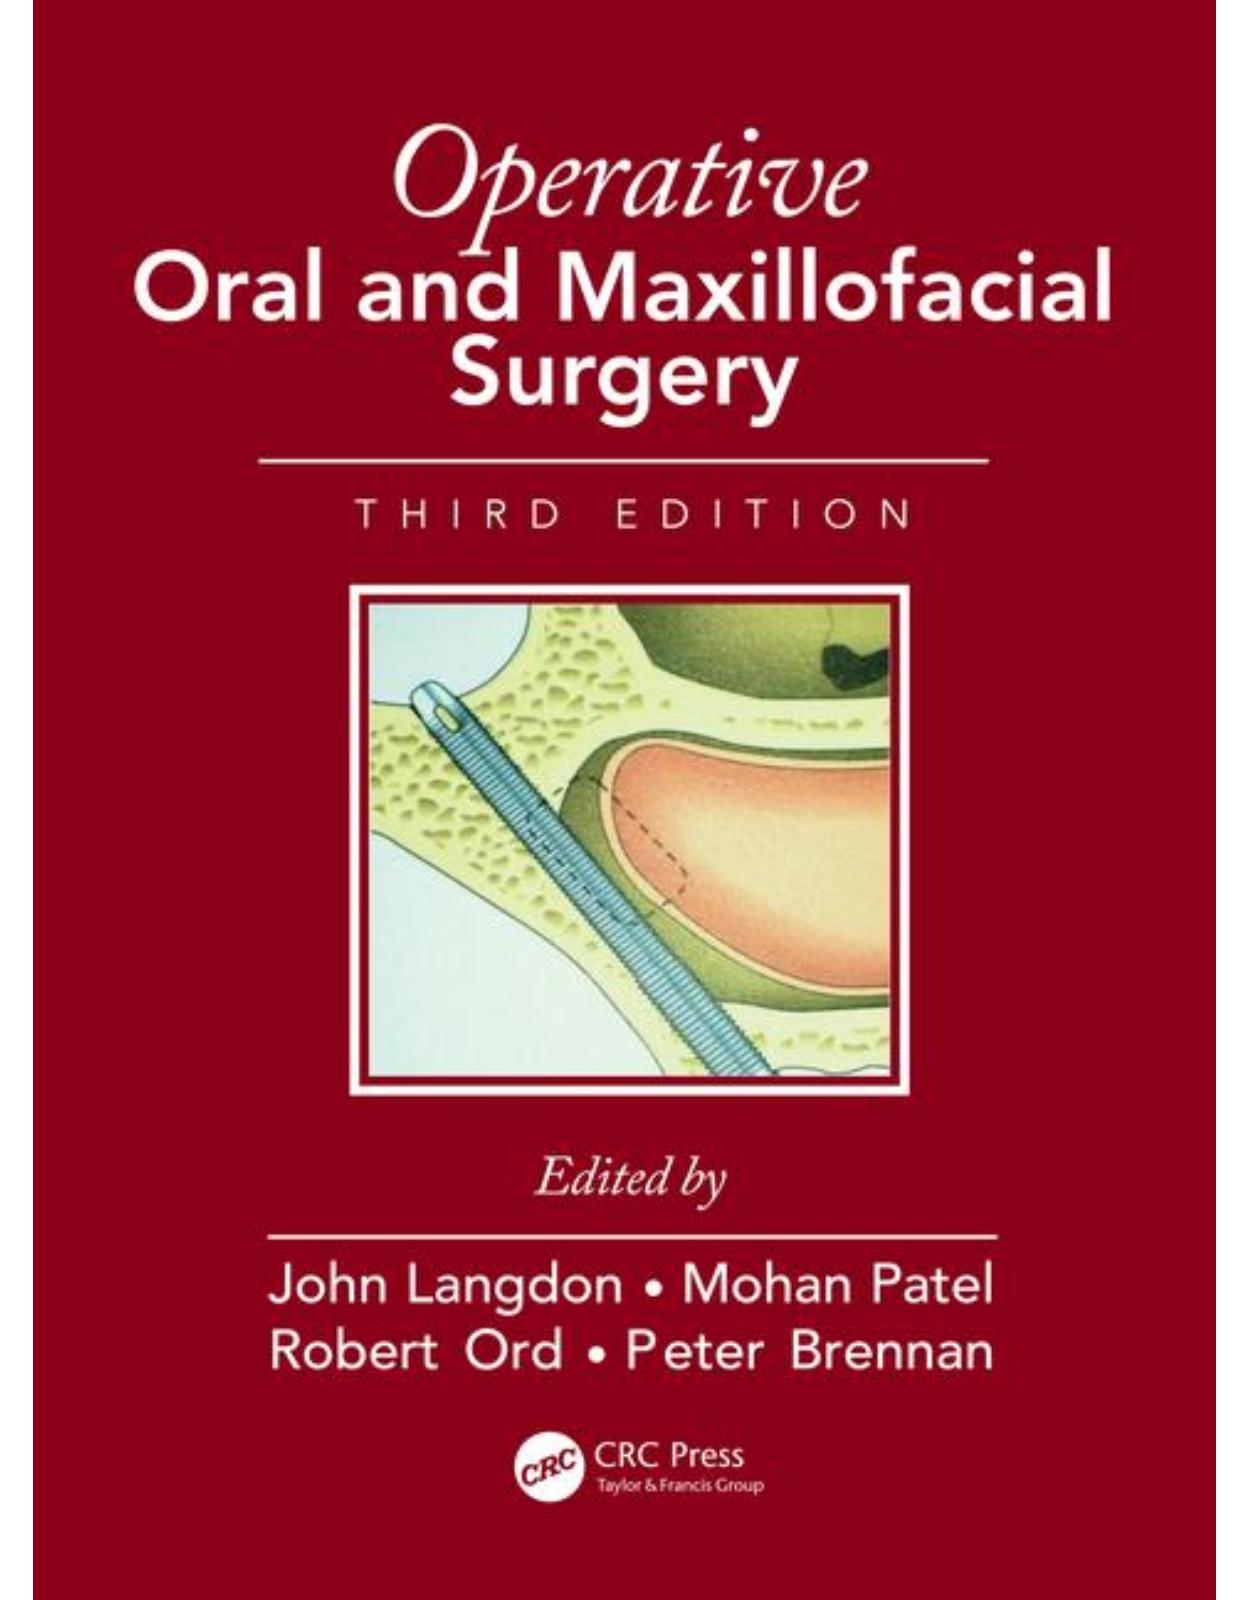 Operative Oral and Maxillofacial Surgery, Third Edition